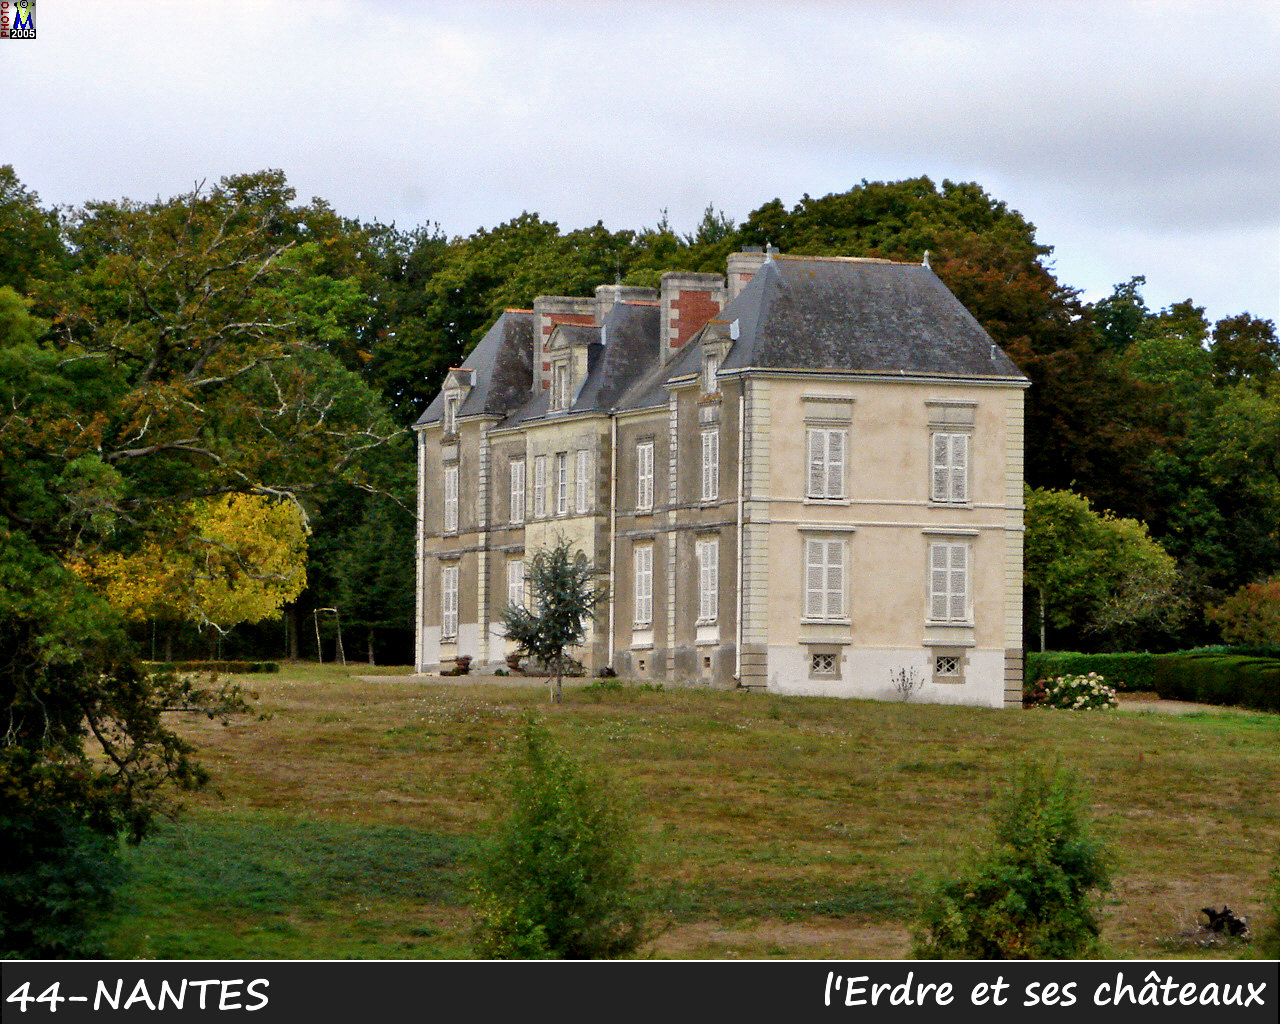 44NANTES_erdre-chateau_114.jpg